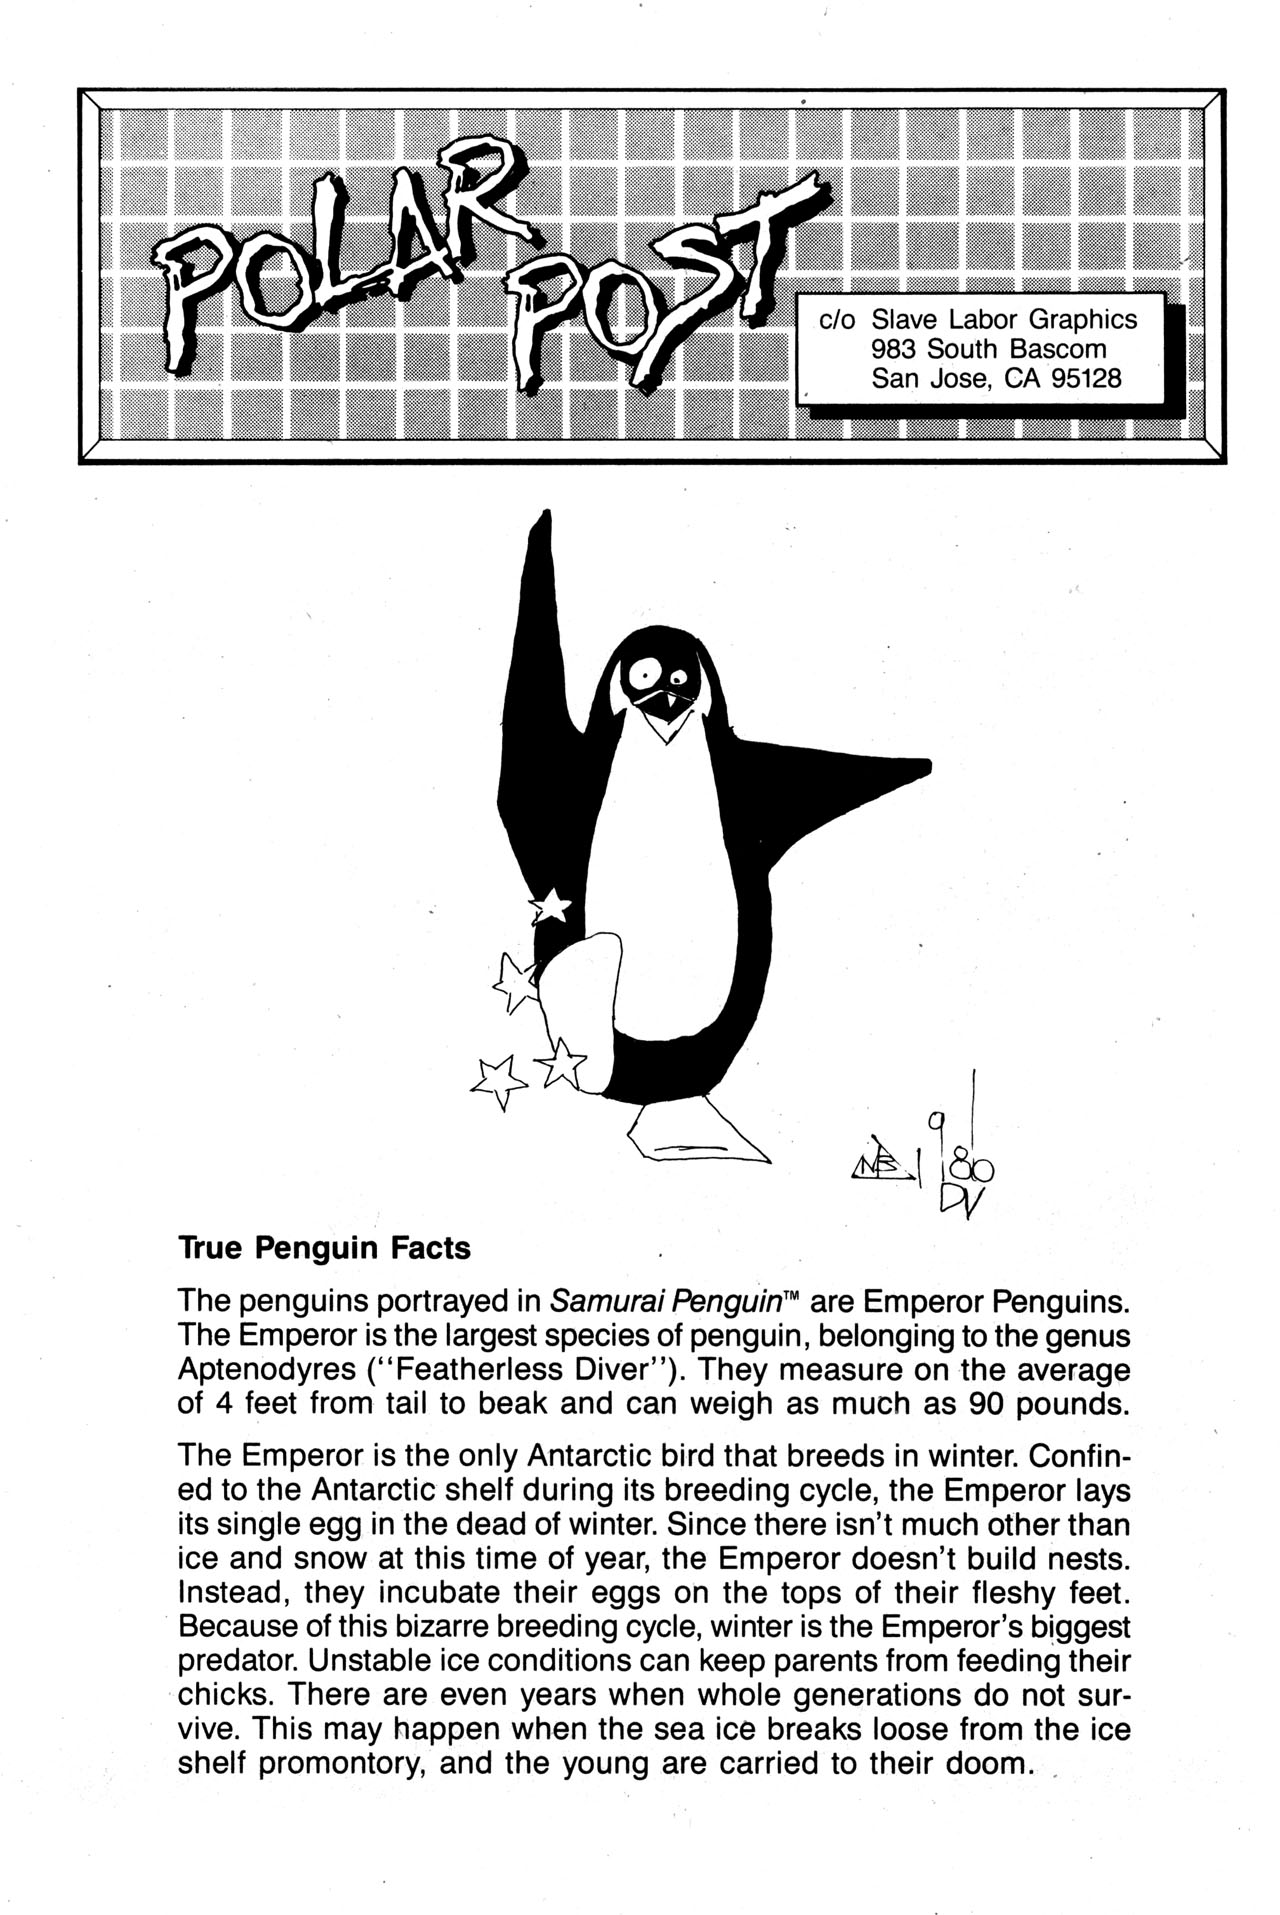 Read online Samurai Penguin comic -  Issue #1 - 24